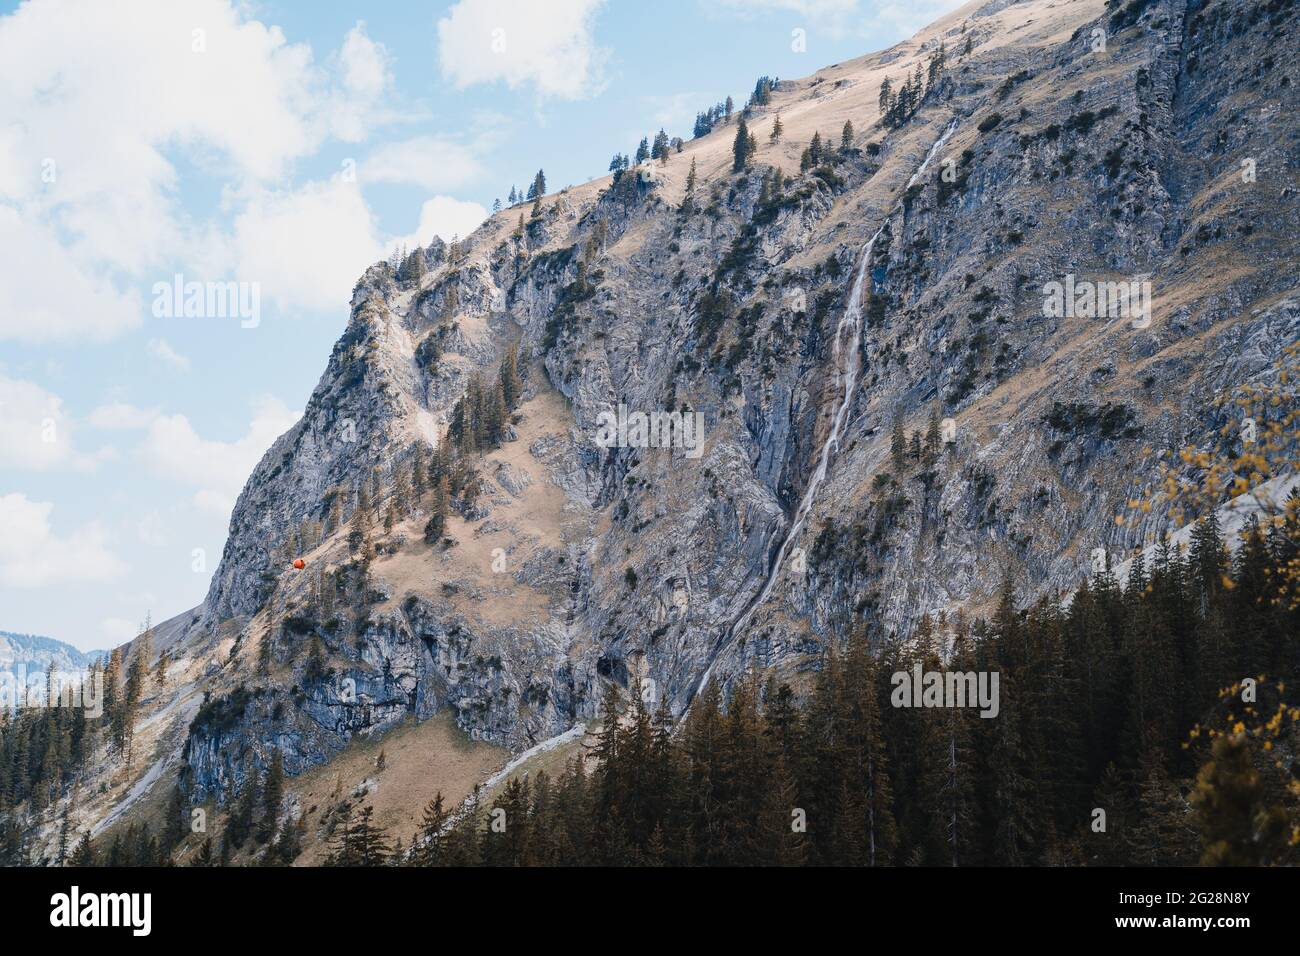 Szene in Österreich, Vilsalpsee und Traualpsee. Wolkiger Tag, See, Berge und Wald machen die Szene majestätisch und beeindruckend. Schöne Landschaft. Stockfoto